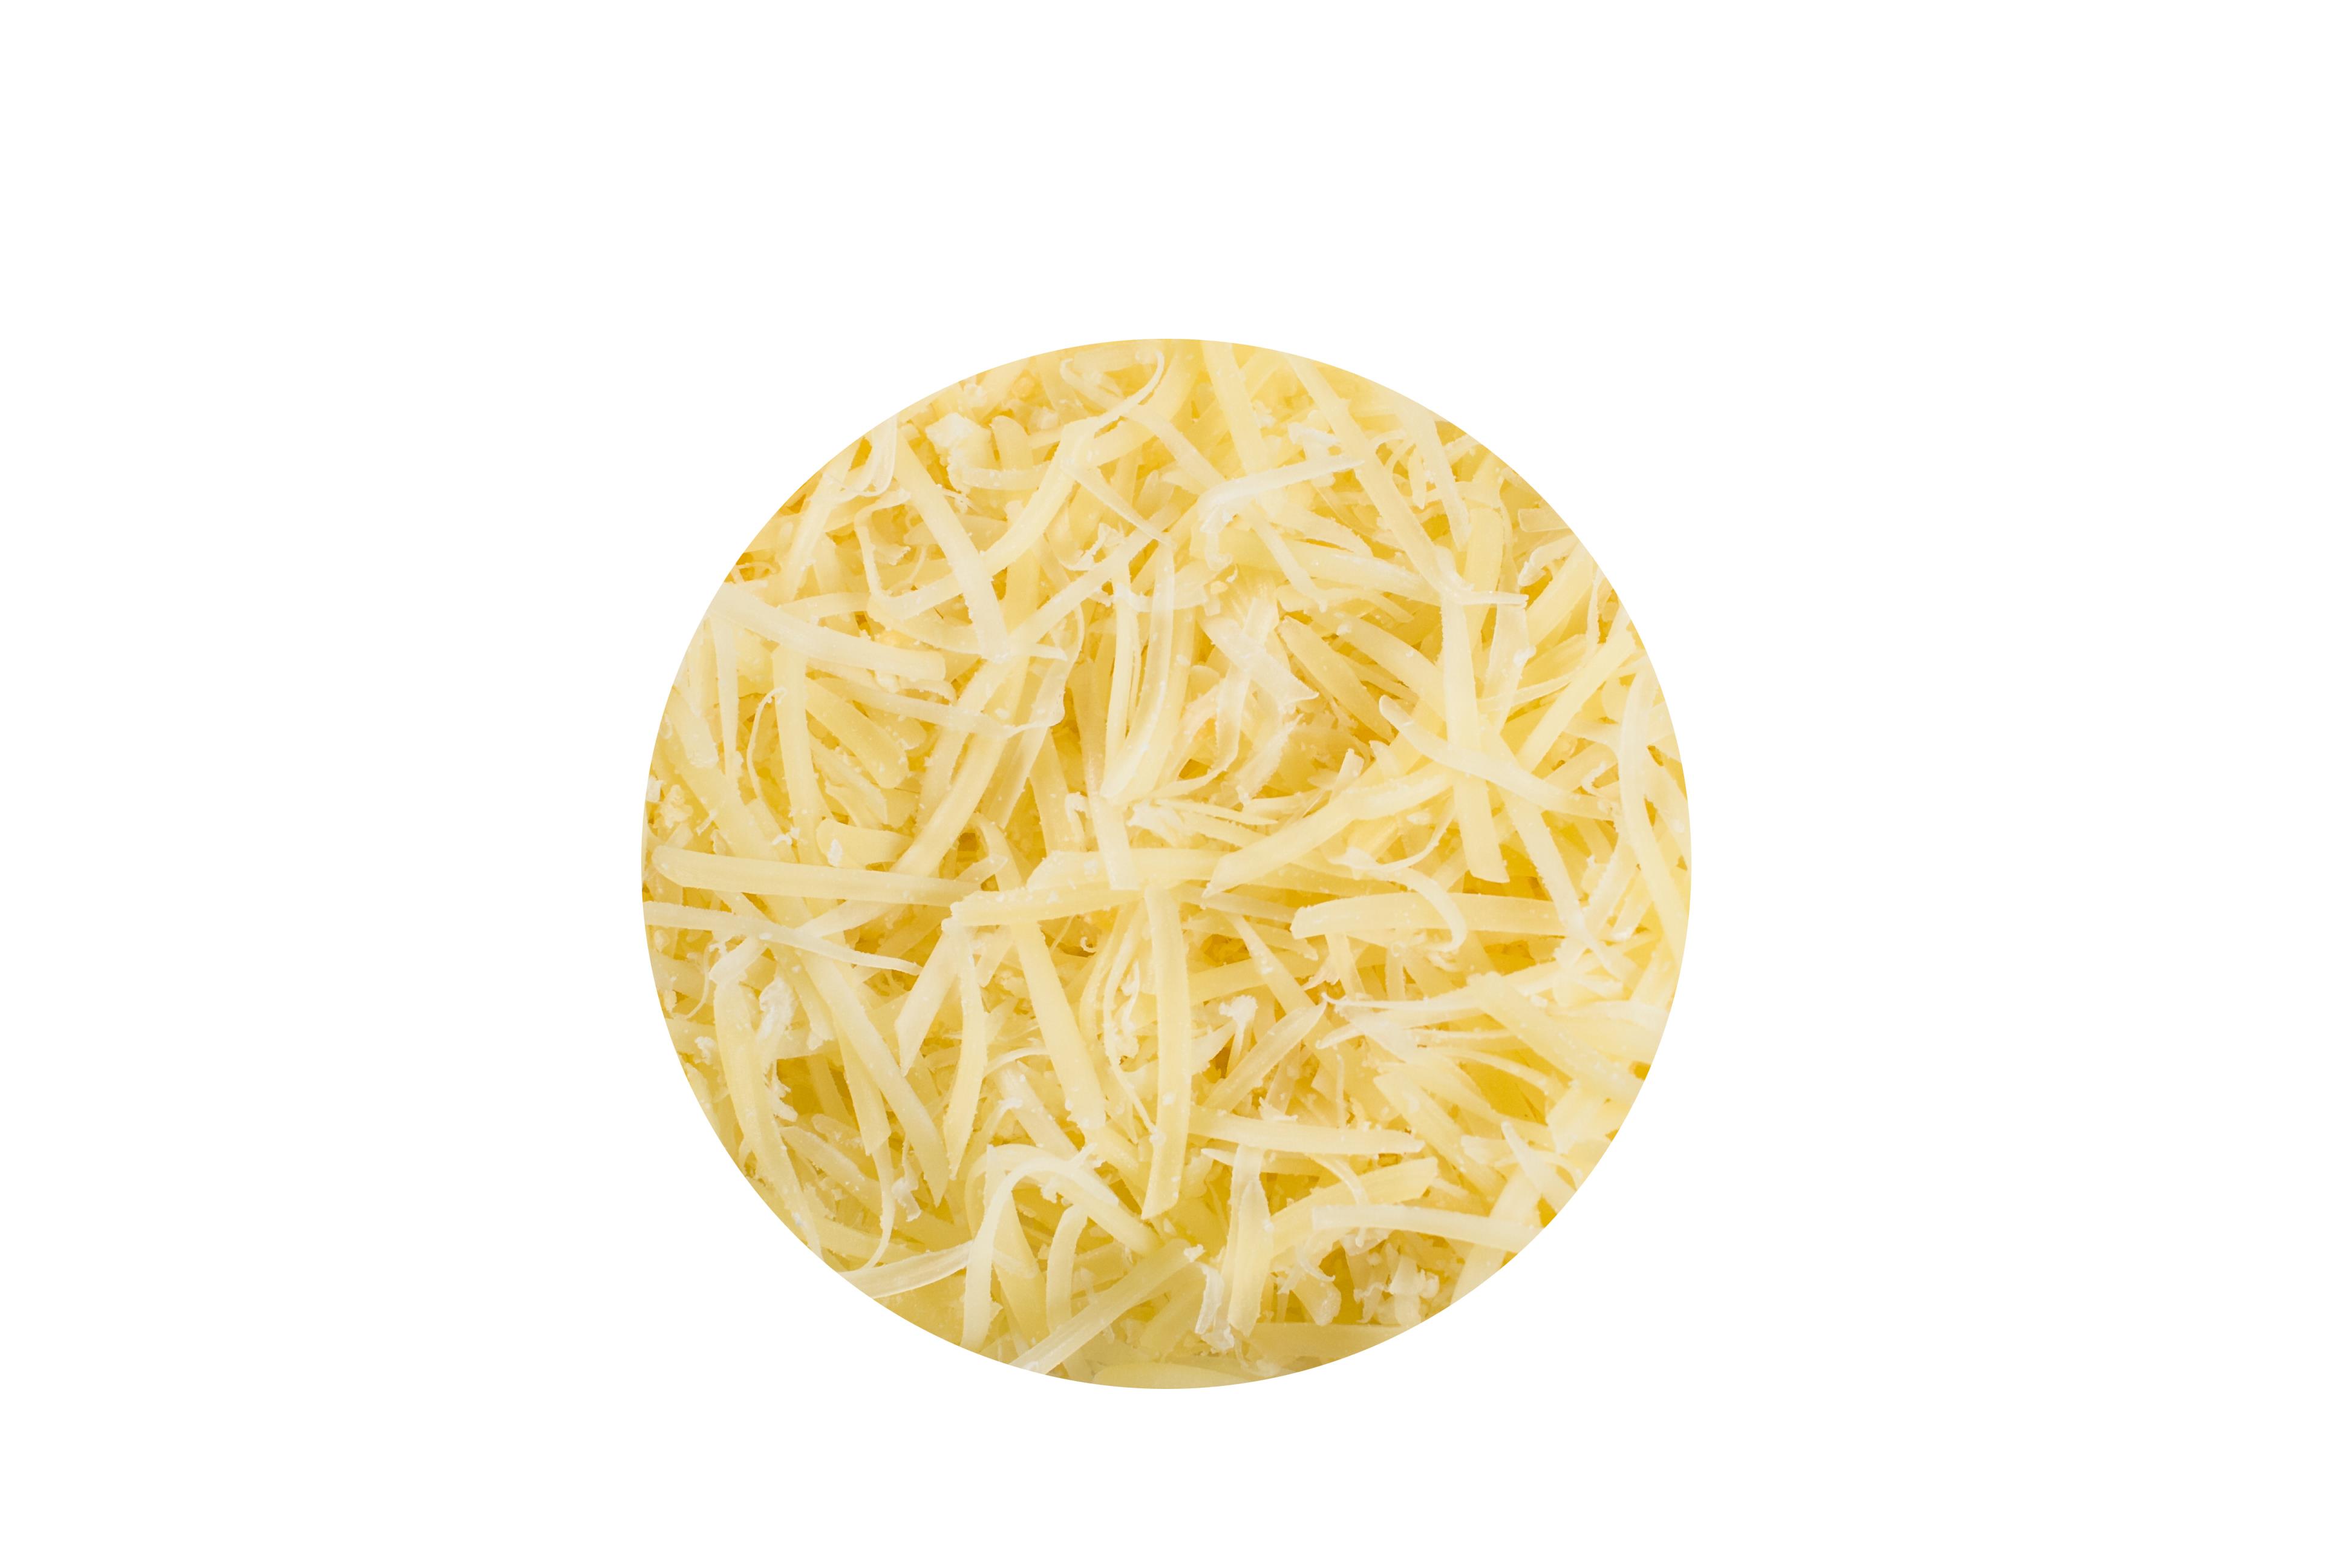 Сыр тертый